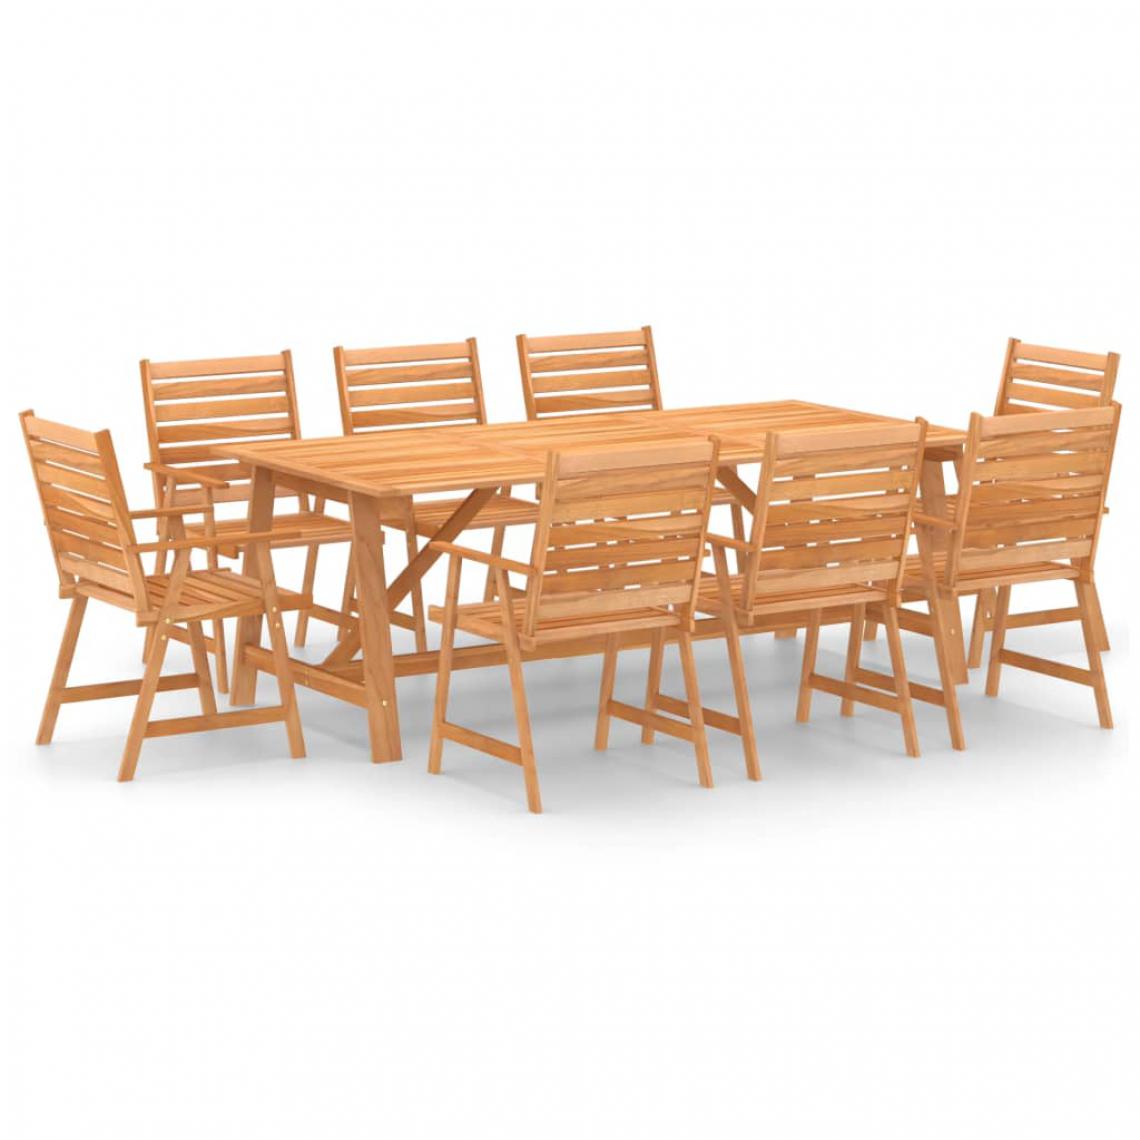 Chunhelife - Mobilier de salle à manger de jardin 9 pcs Bois d'acacia solide - Ensembles canapés et fauteuils